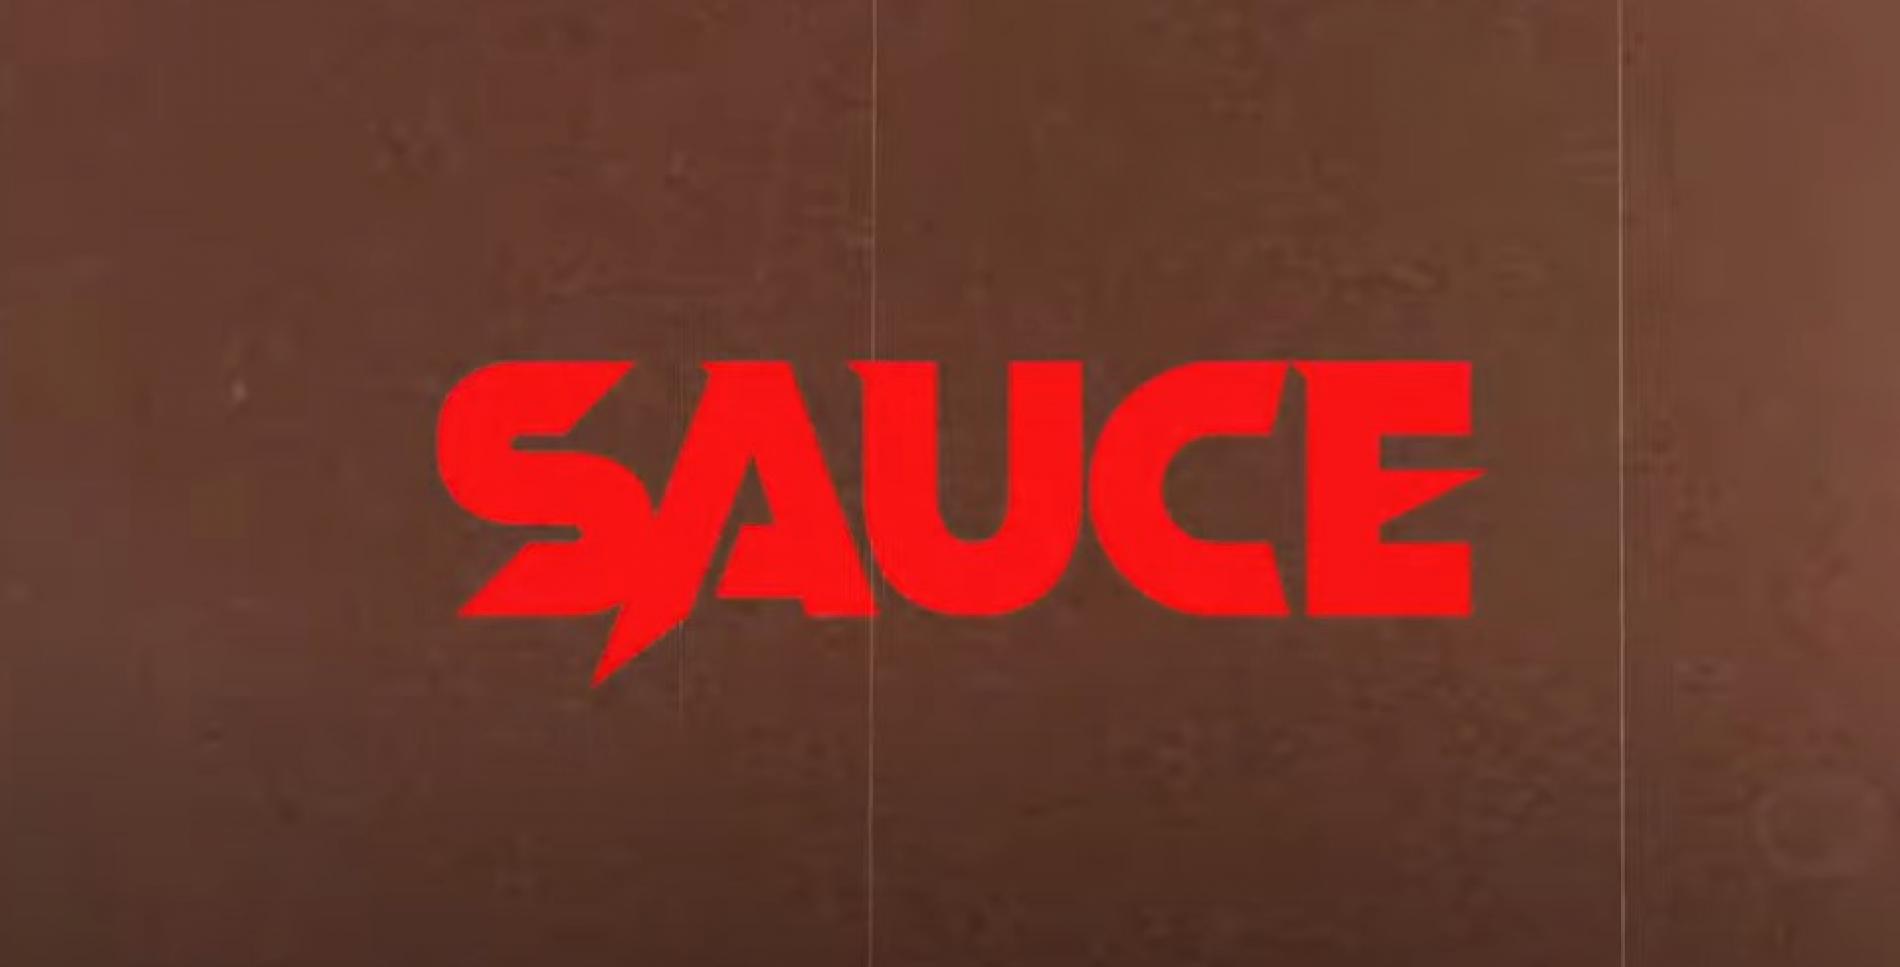 New Music Alert : Sauce – Apzi ft Adeesha Beats (Official trailer)